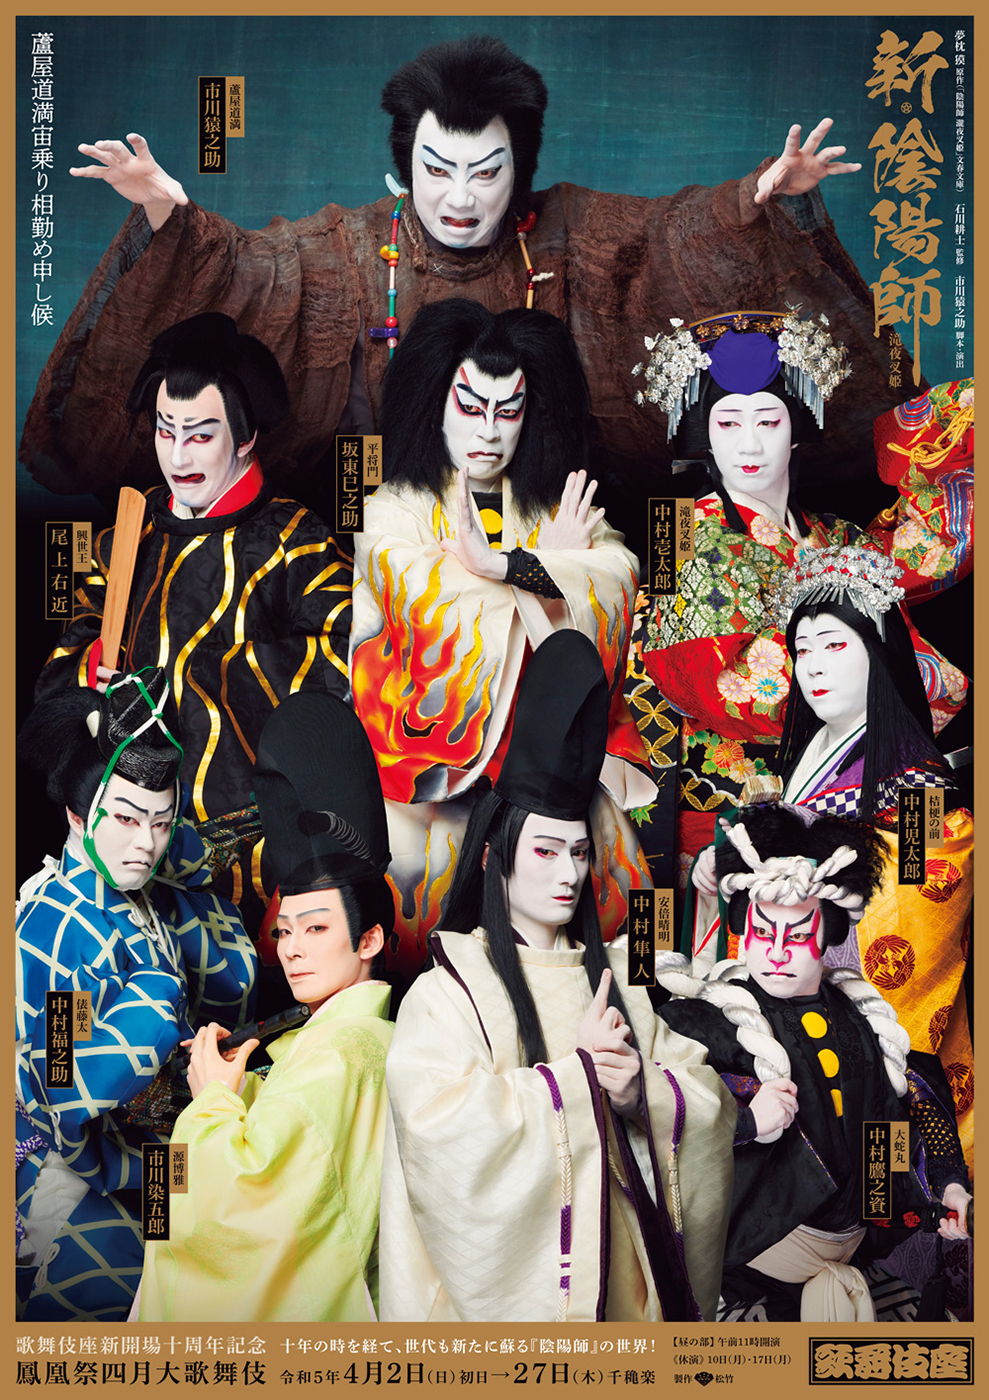 鳳凰祭四月大歌舞伎 昼の部『新・陰陽師』歌舞伎座